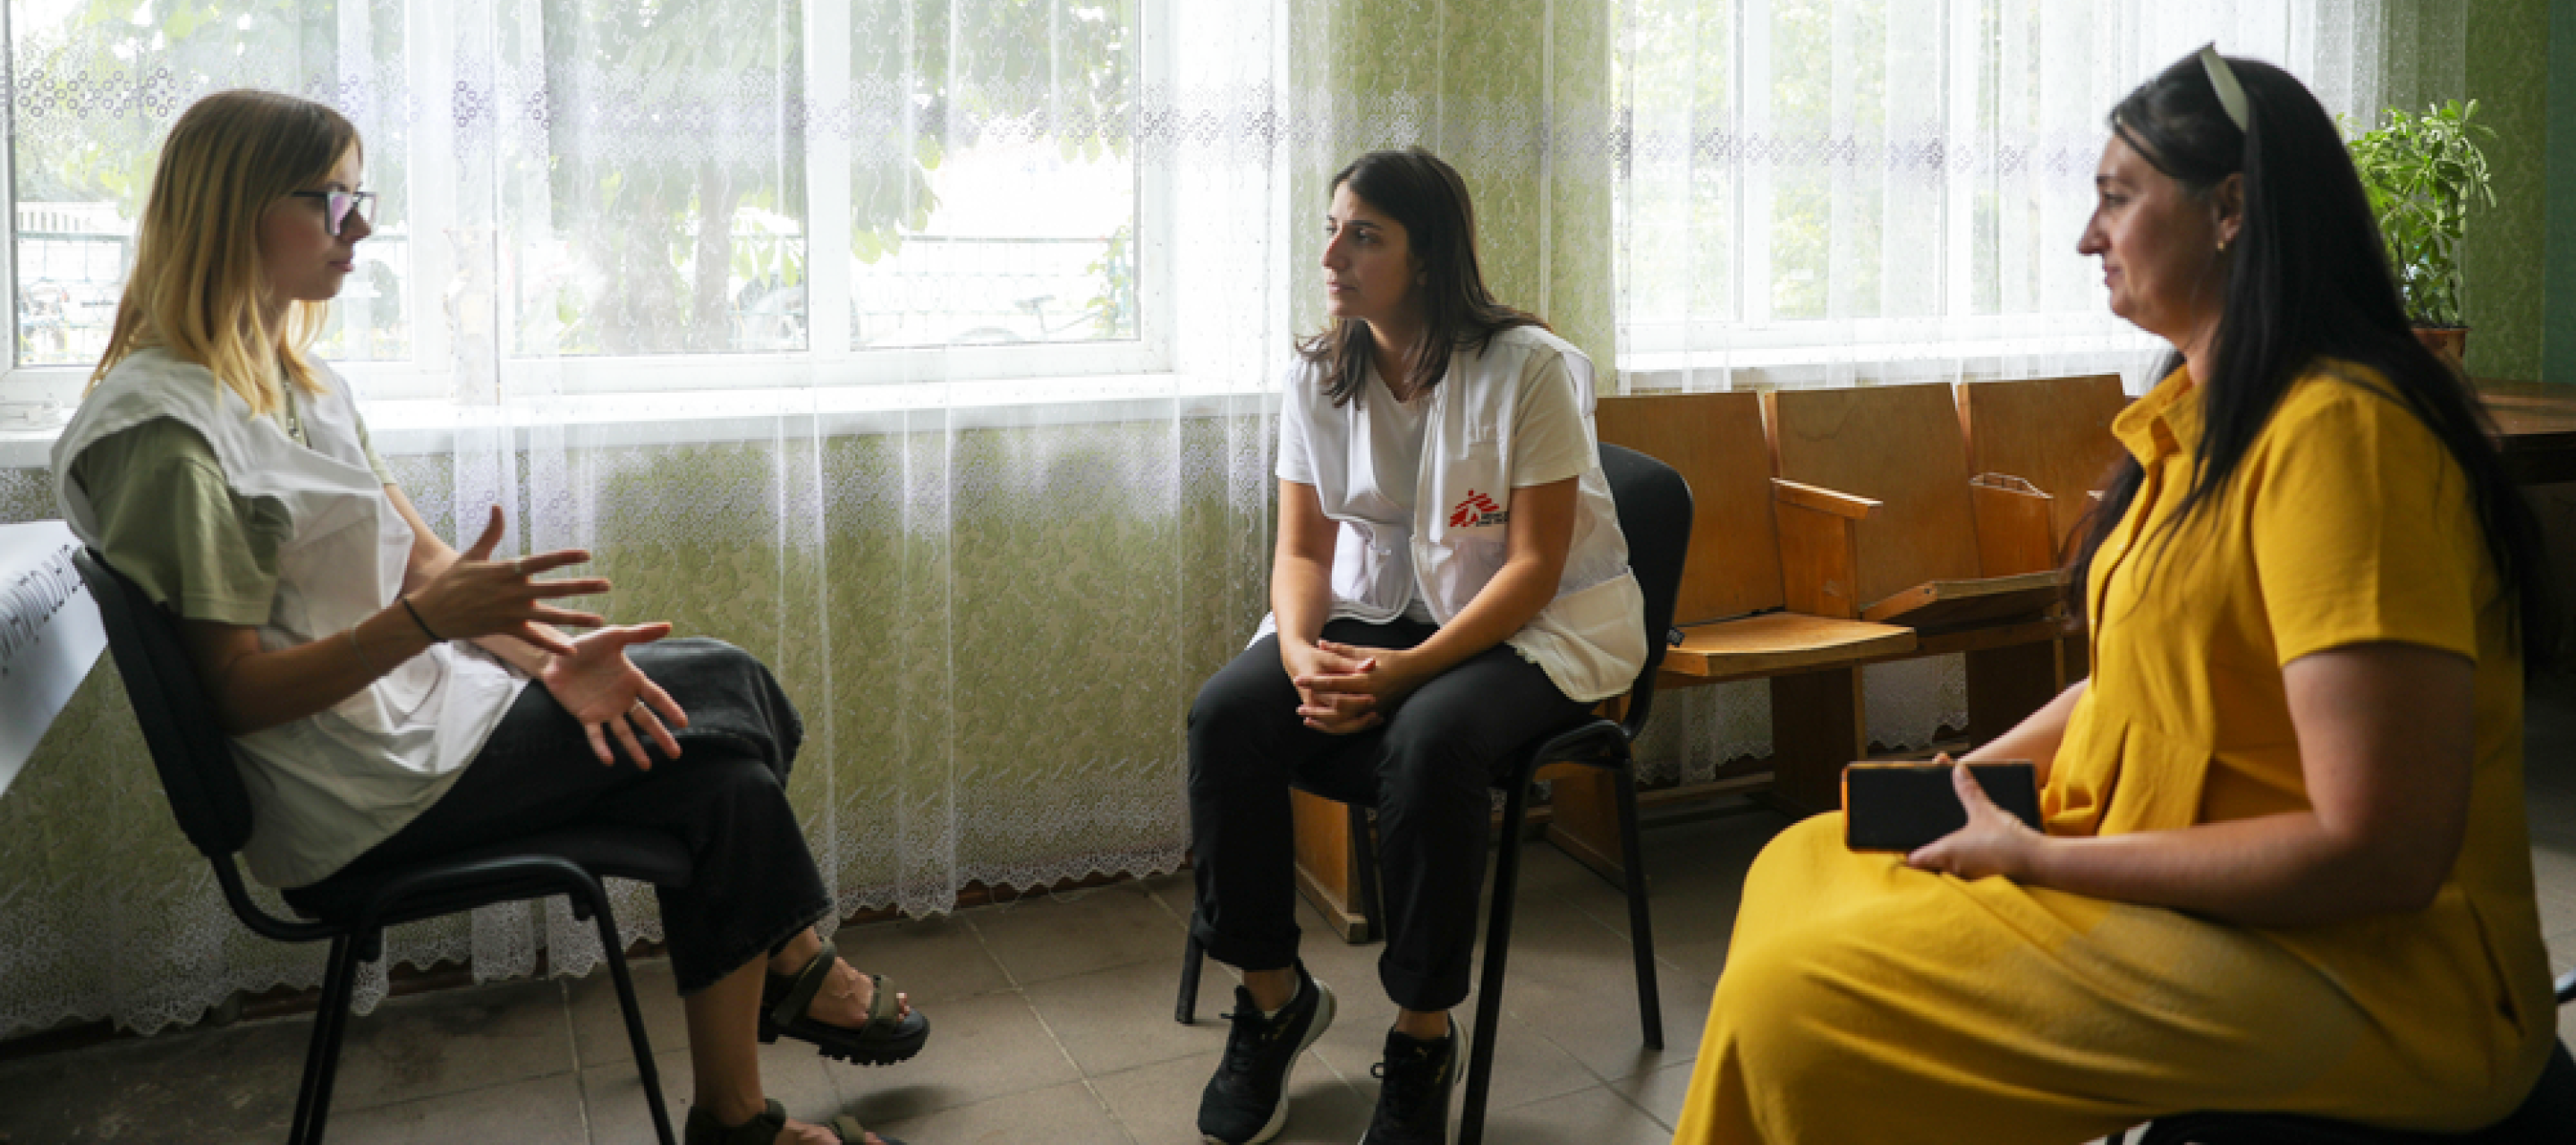 Drei Frauen in Stuhlkreis im Gespräch miteinander, eine ist Projektkoordinatorin